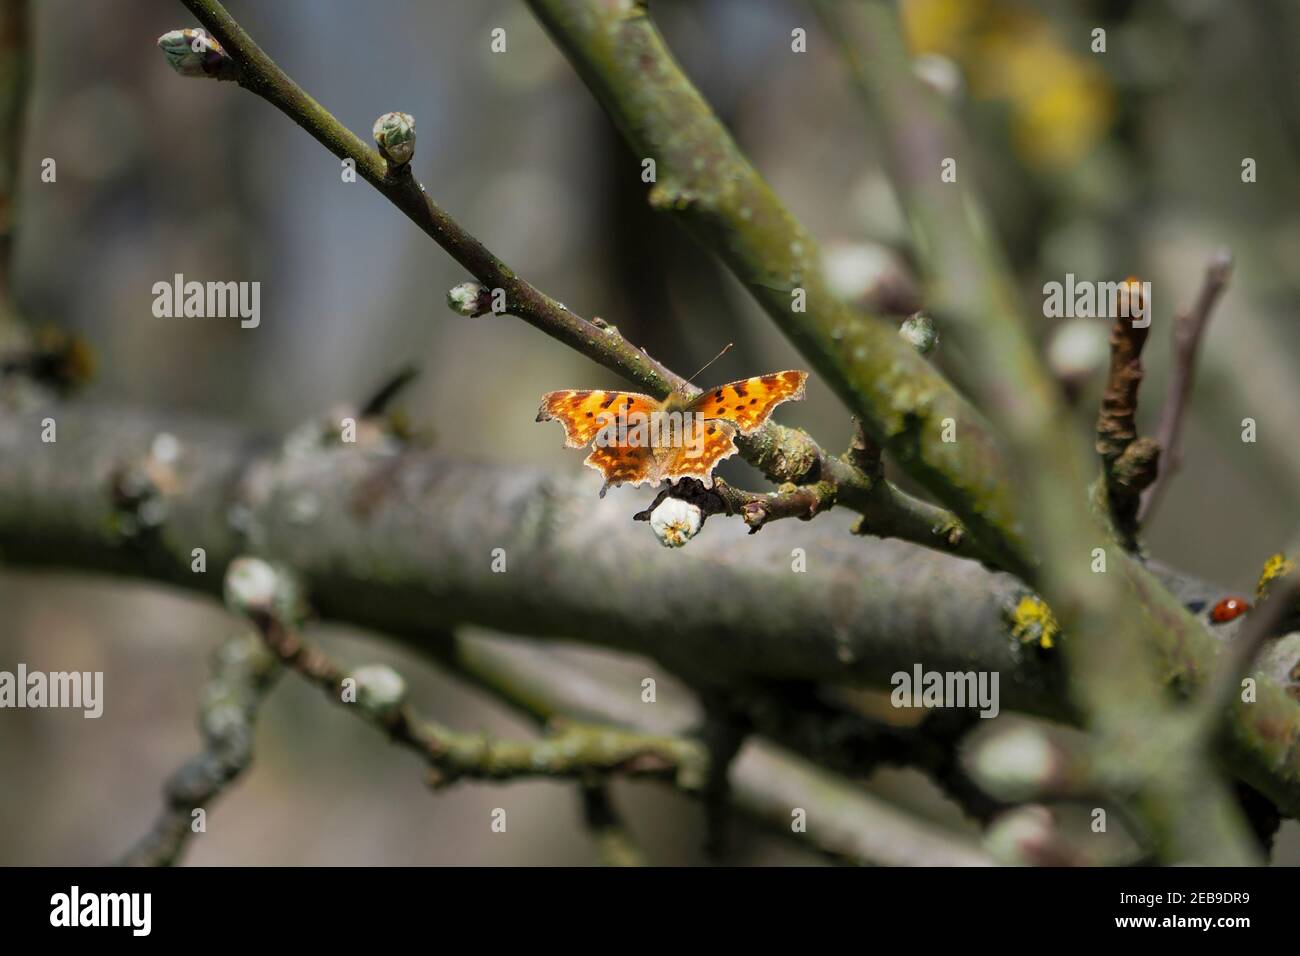 Polygonia c-album, la coma, es una especie de mariposa generalista de alimentos (polifagous) perteneciente a la familia Nymphalidae. , una foto intrépida Foto de stock